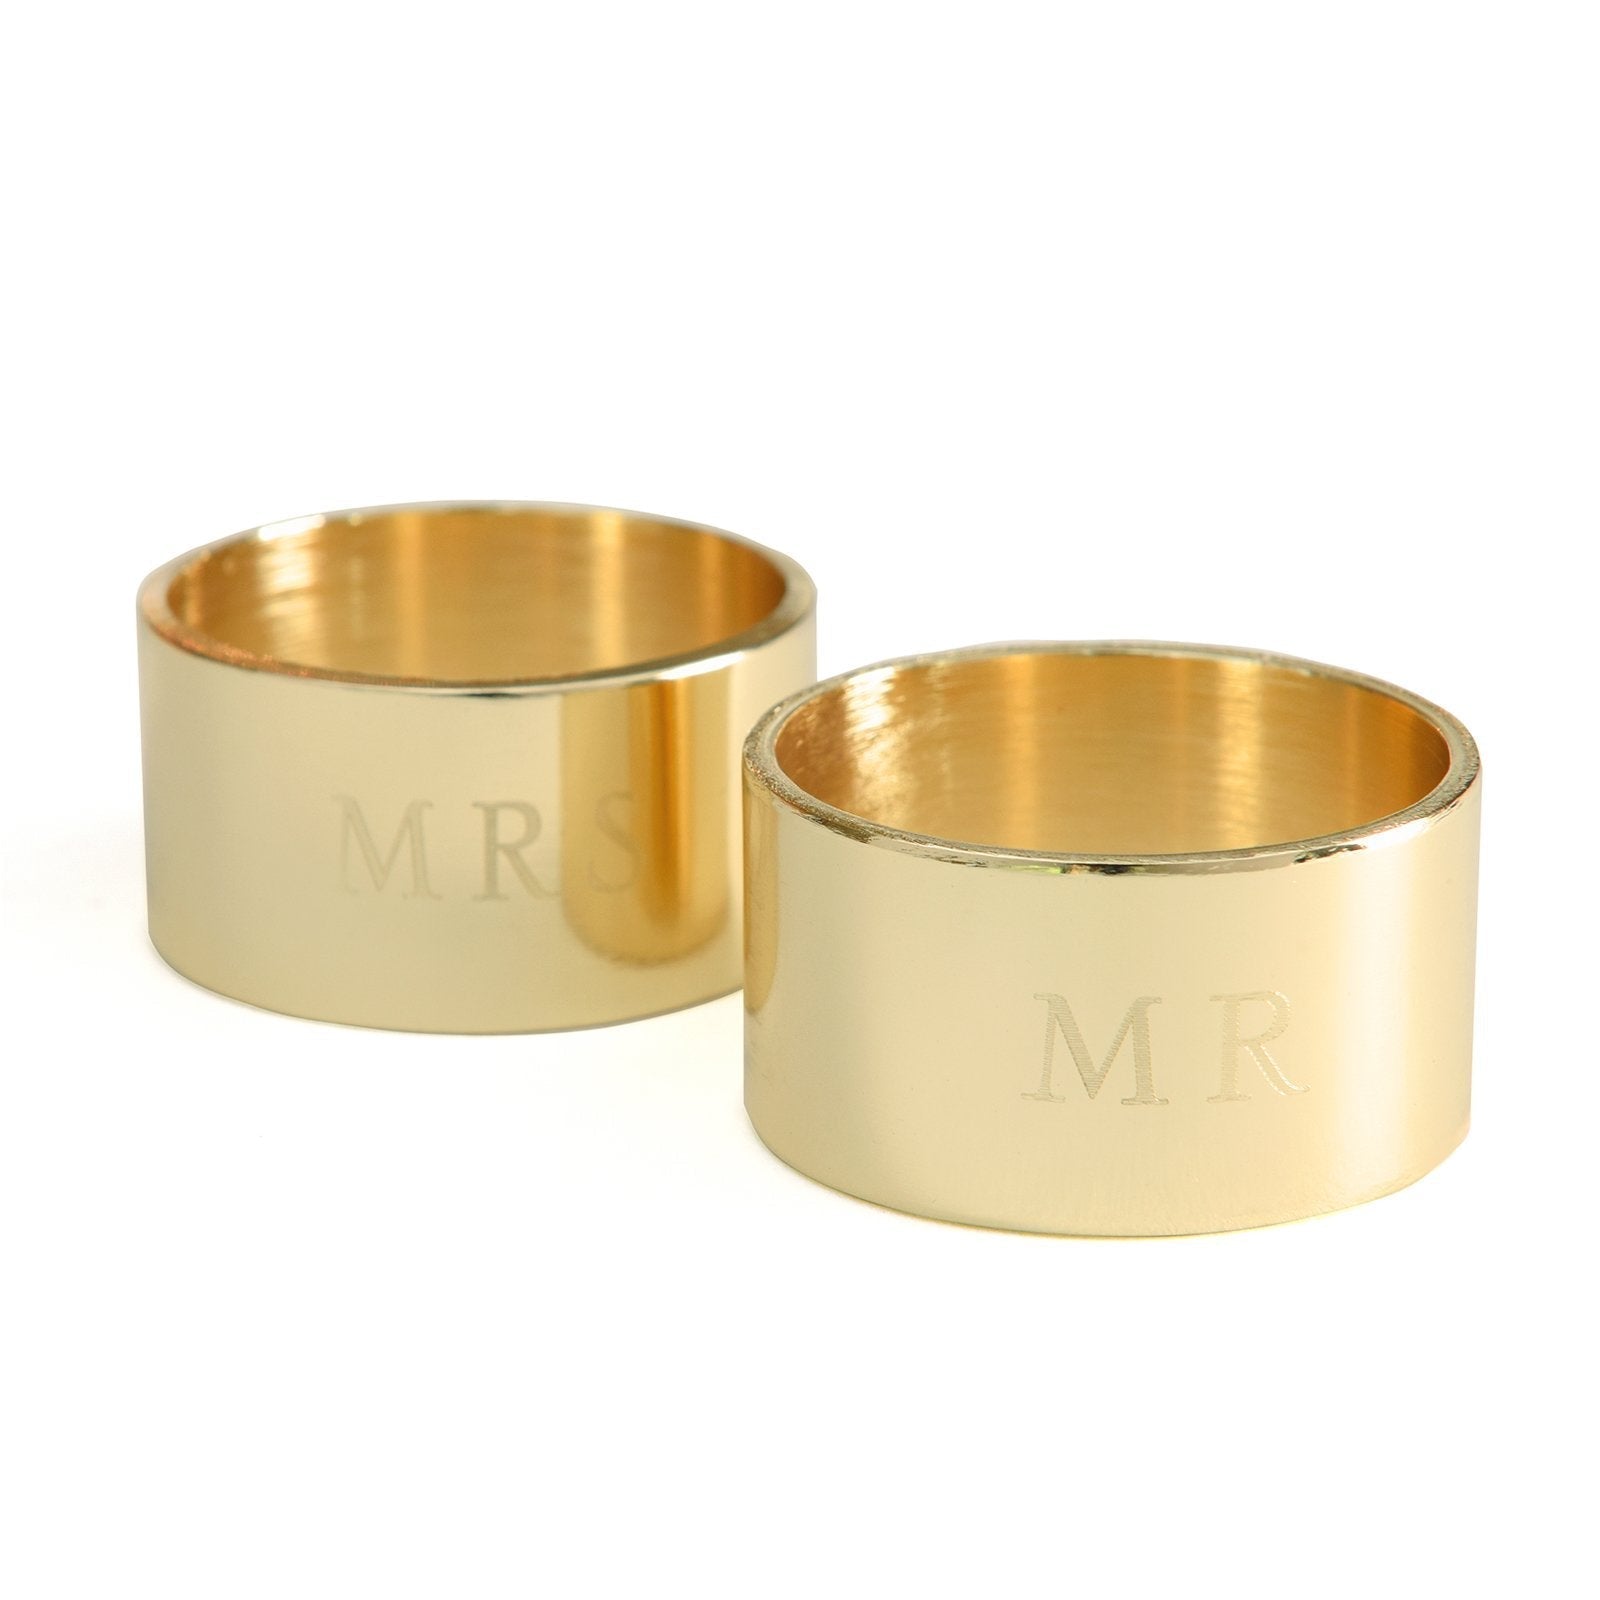 Mr and Mrs Napkin Rings - 2 Count Gartner Studios Napkin Ring 36155